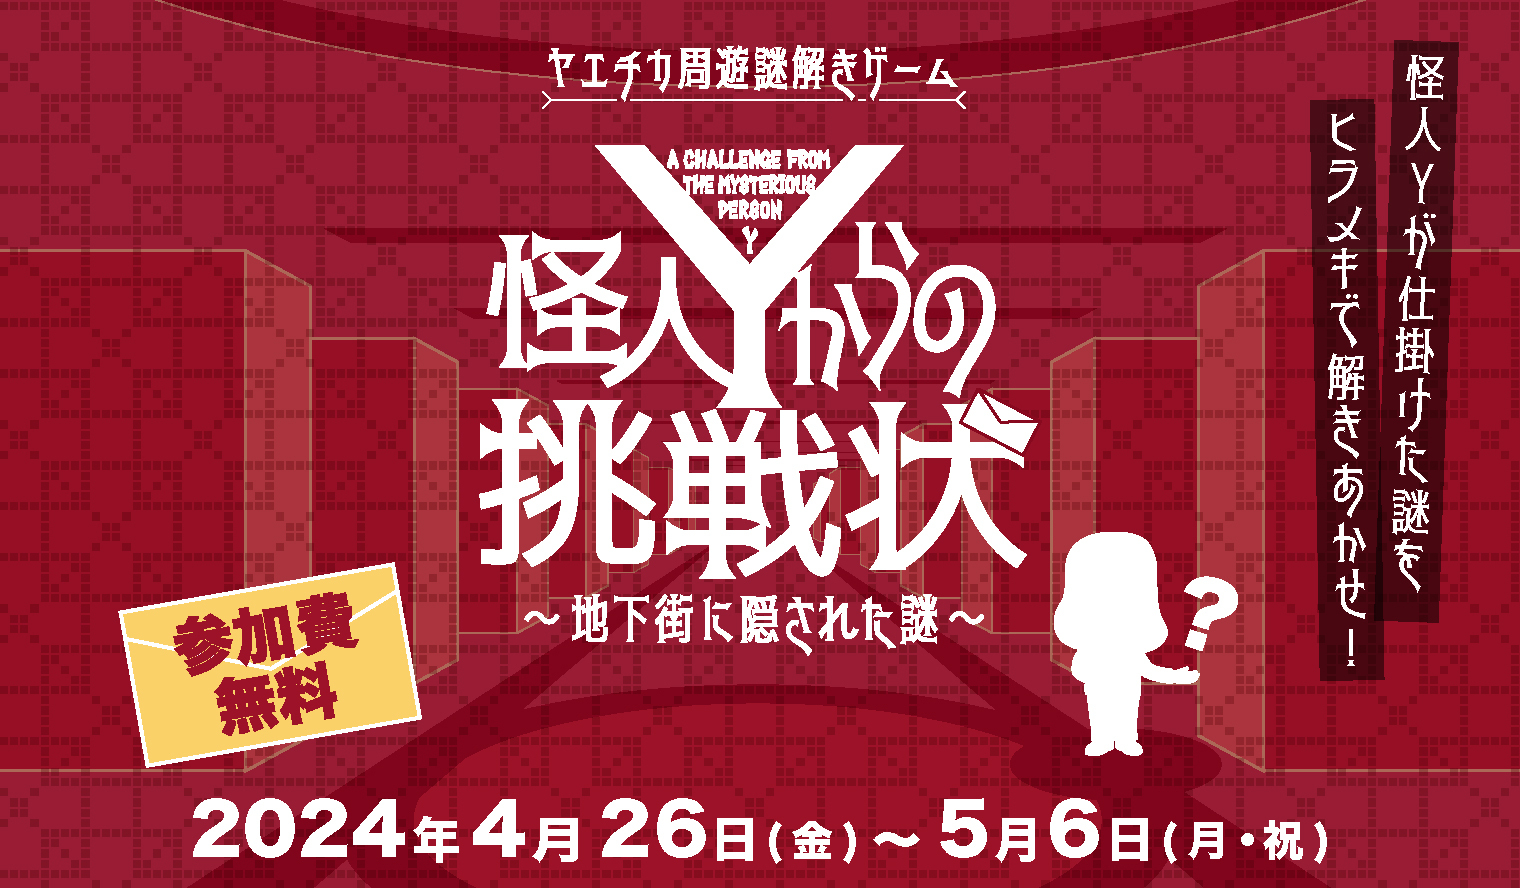 ヤエチカ周遊謎解きゲーム
「怪人Yからの挑戦状～地下街に隠された謎～」　
4月26日(金)から開催